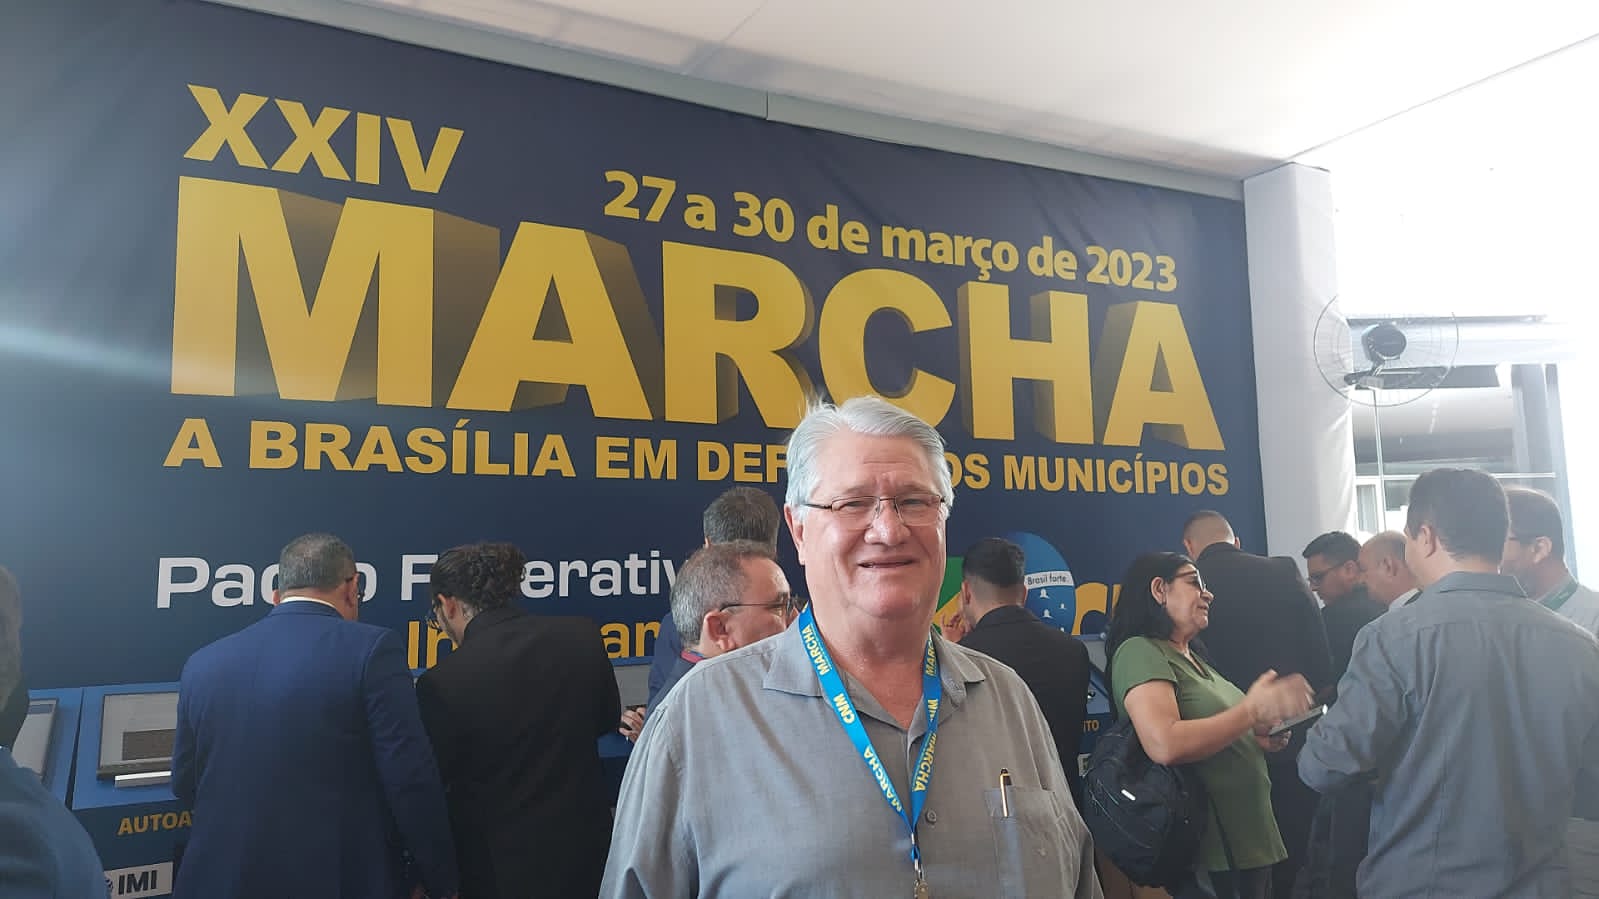 Prefeito Bica na XXIV Marcha a Brasília em Defesa dos Municípios 2023 - Imagem Divulgação